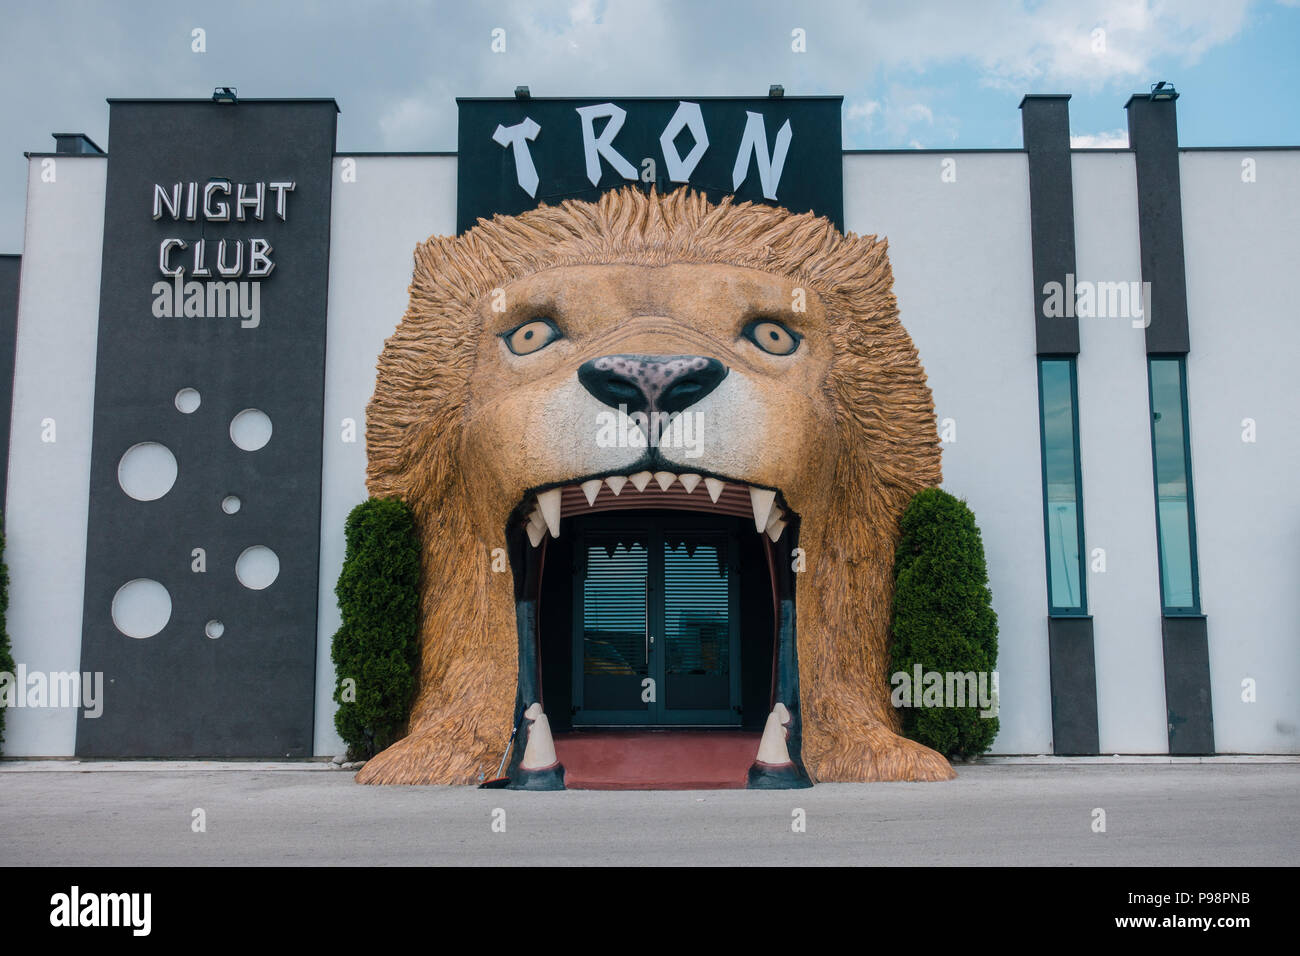 Une tête de lion géante sert d'entrée à la discothèque Tron, dans la banlieue de Travnik, en Bosnie-Herzégovine Banque D'Images